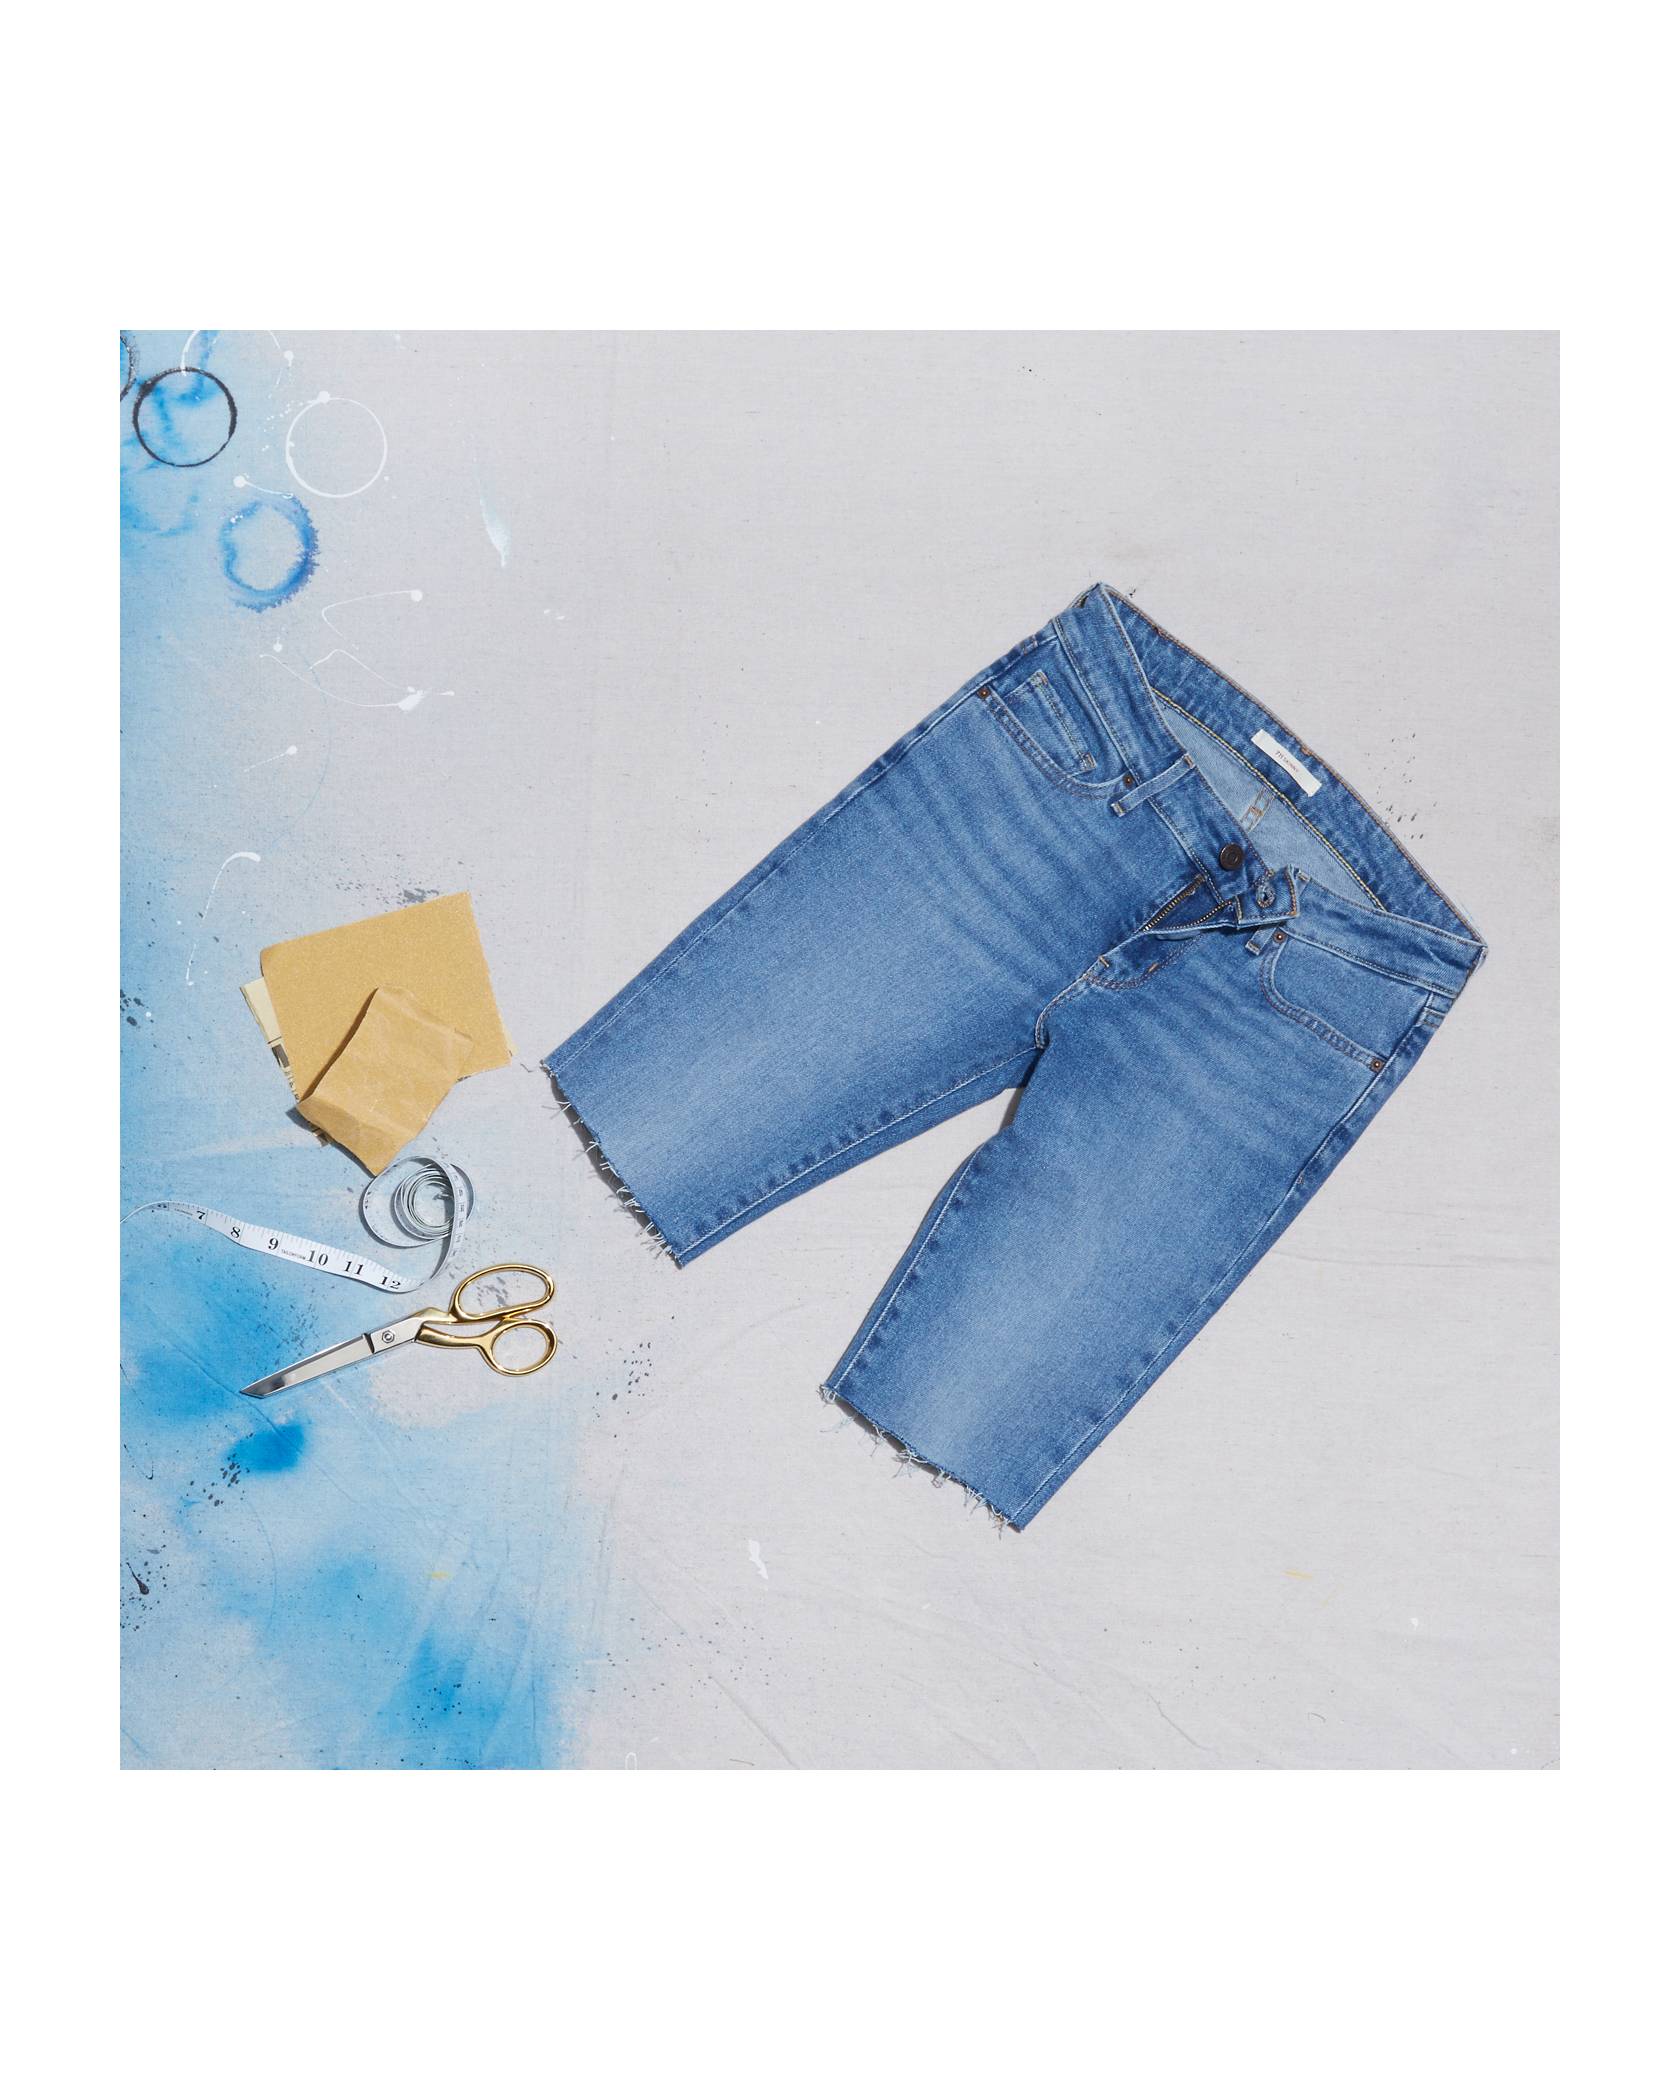 DIY Shorts - Make Perfect Cut Off Jean Shorts